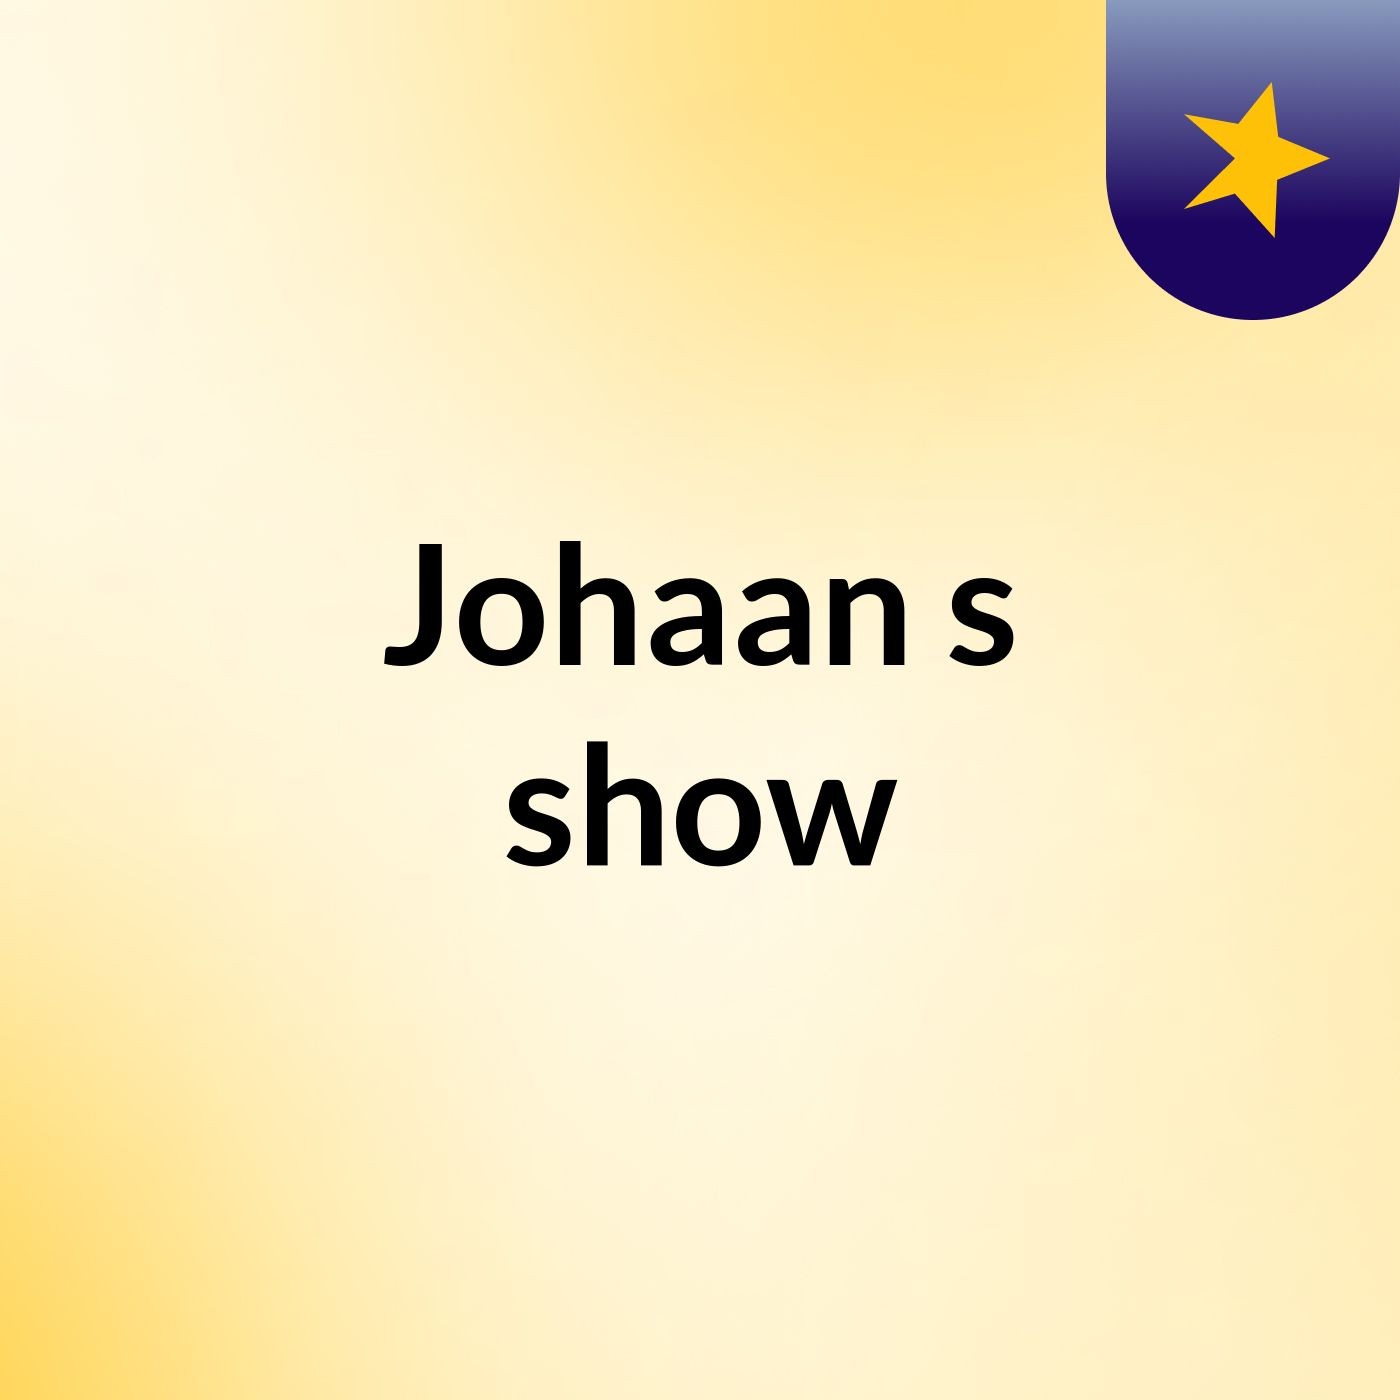 Johaan's show